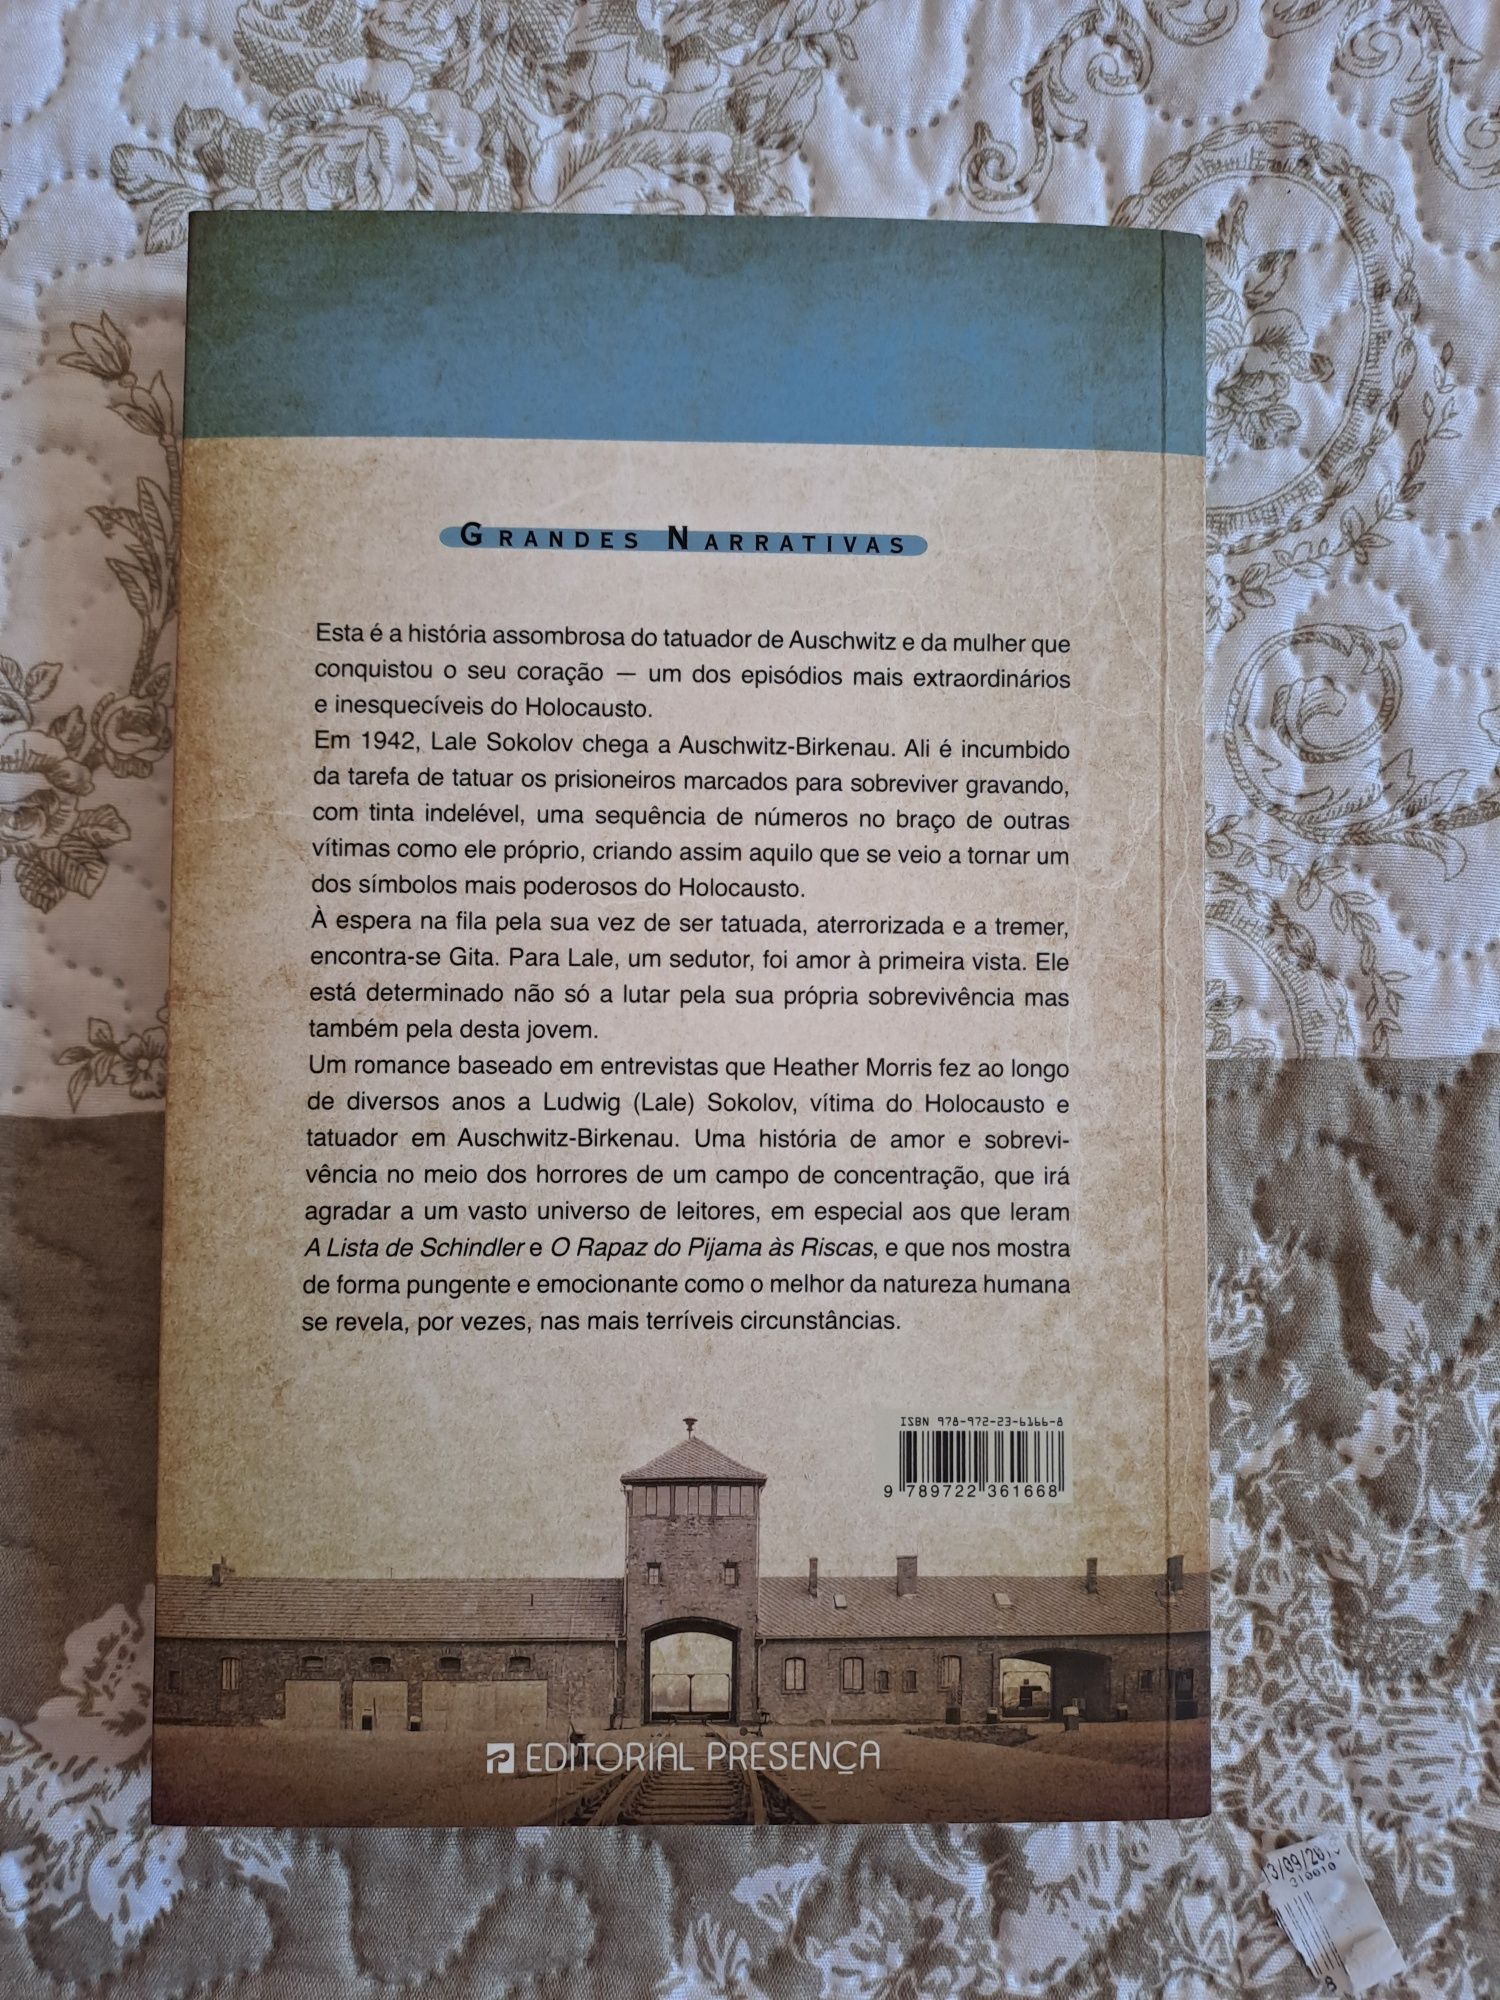 Livro "O Tatuador de Auschwitz" de Heather Morris